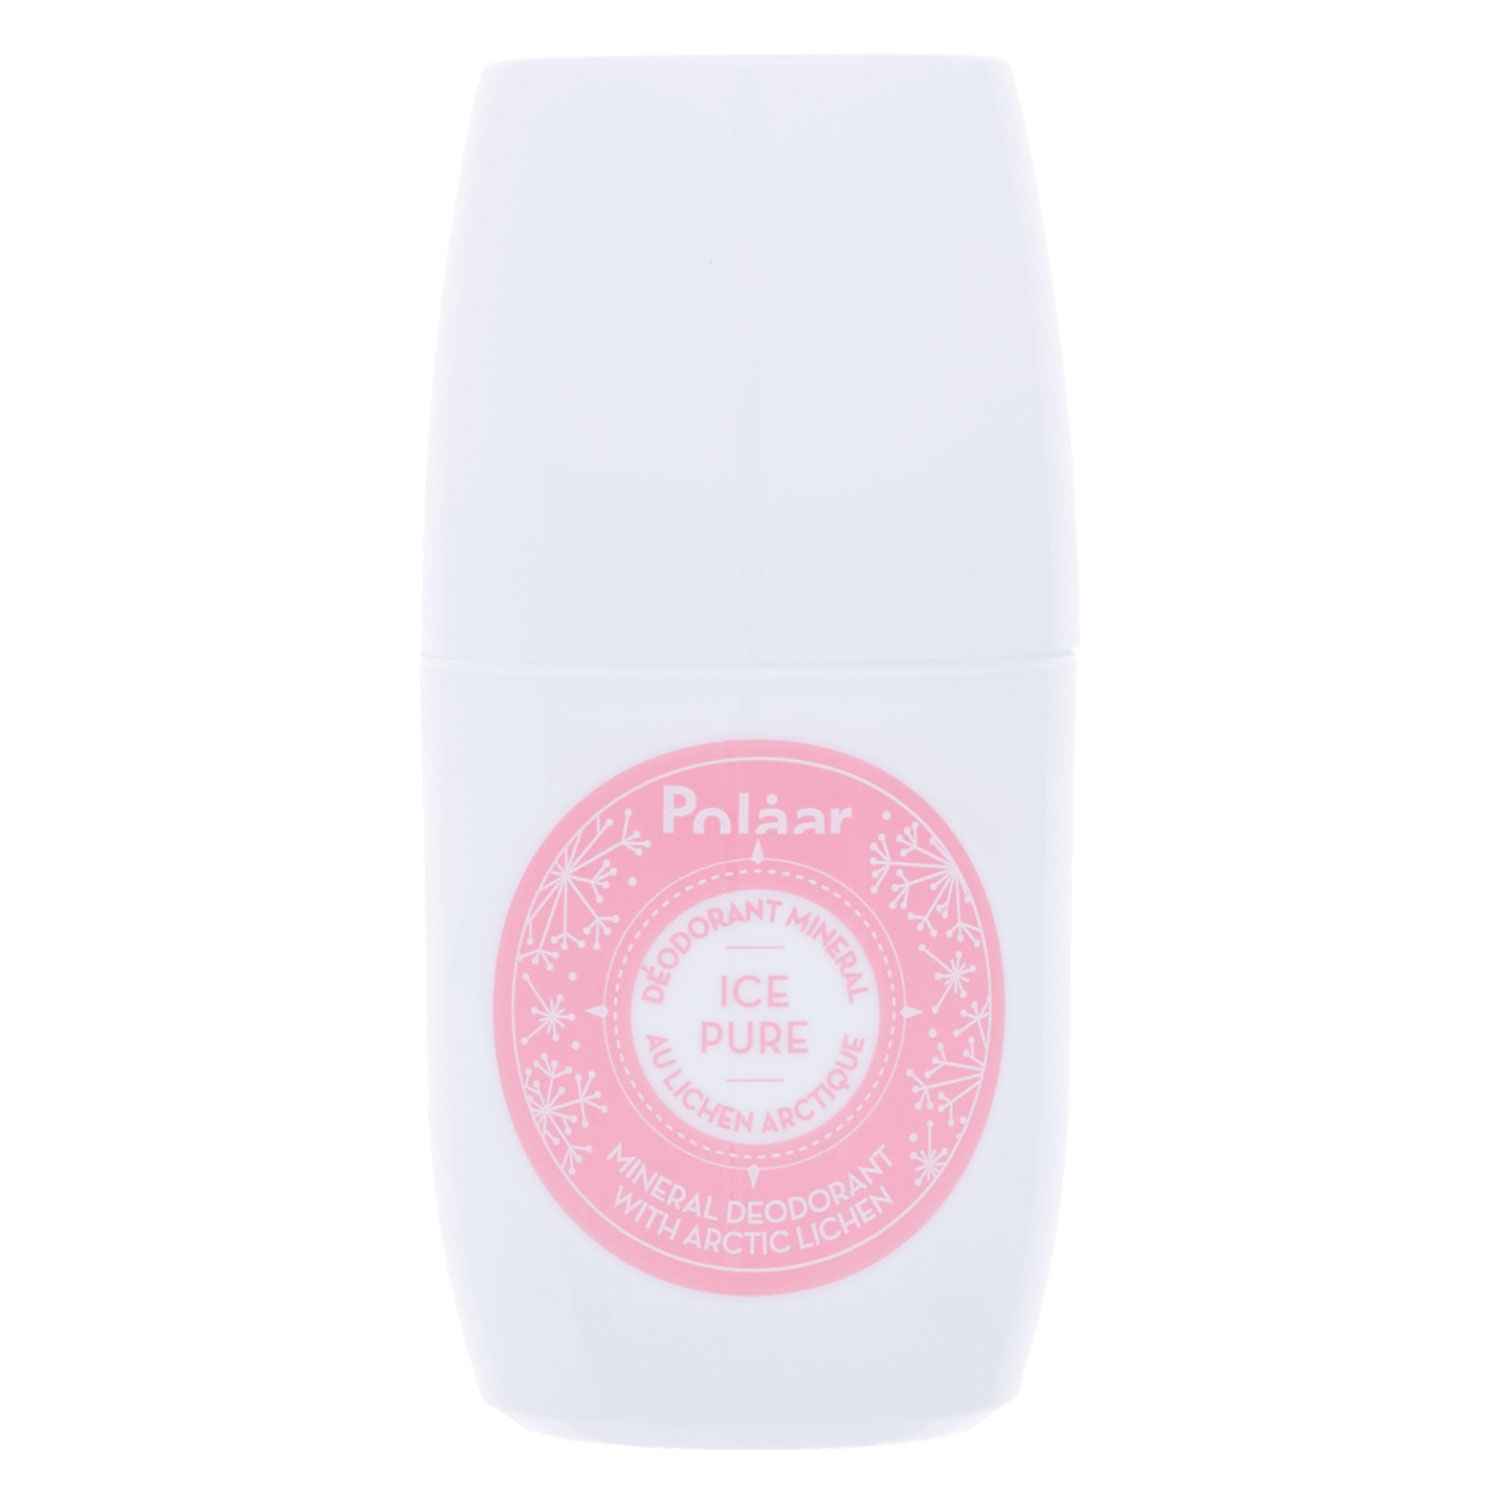 Produktbild von Polaar - Ice Pure Mineral Deodorant